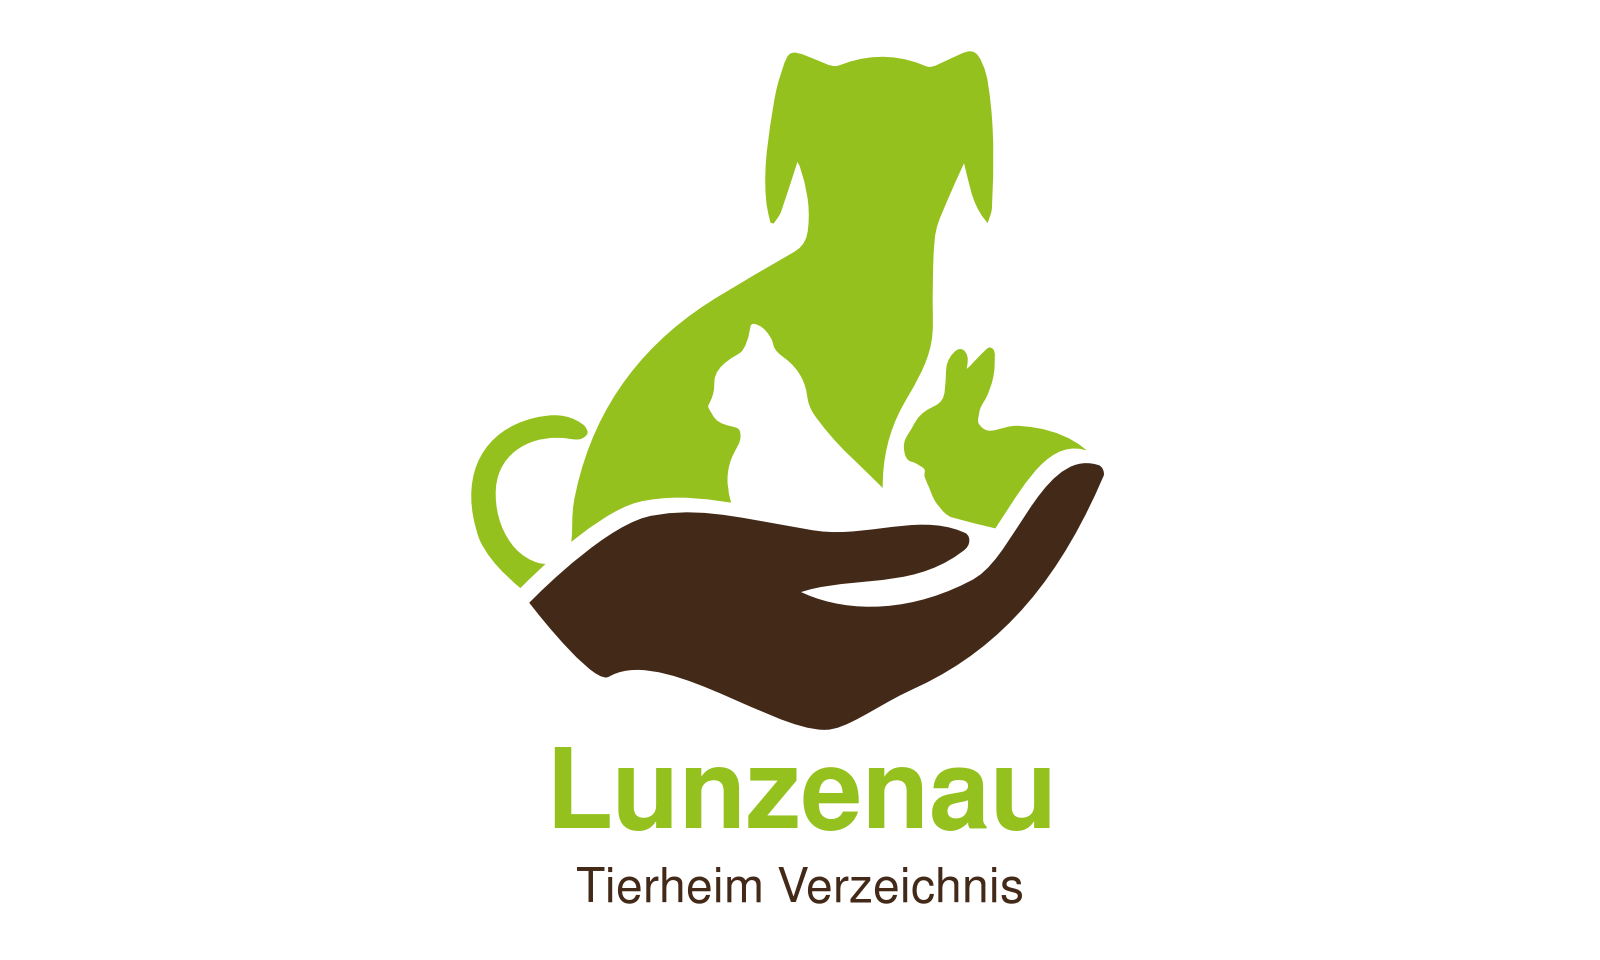 Tierheim Lunzenau